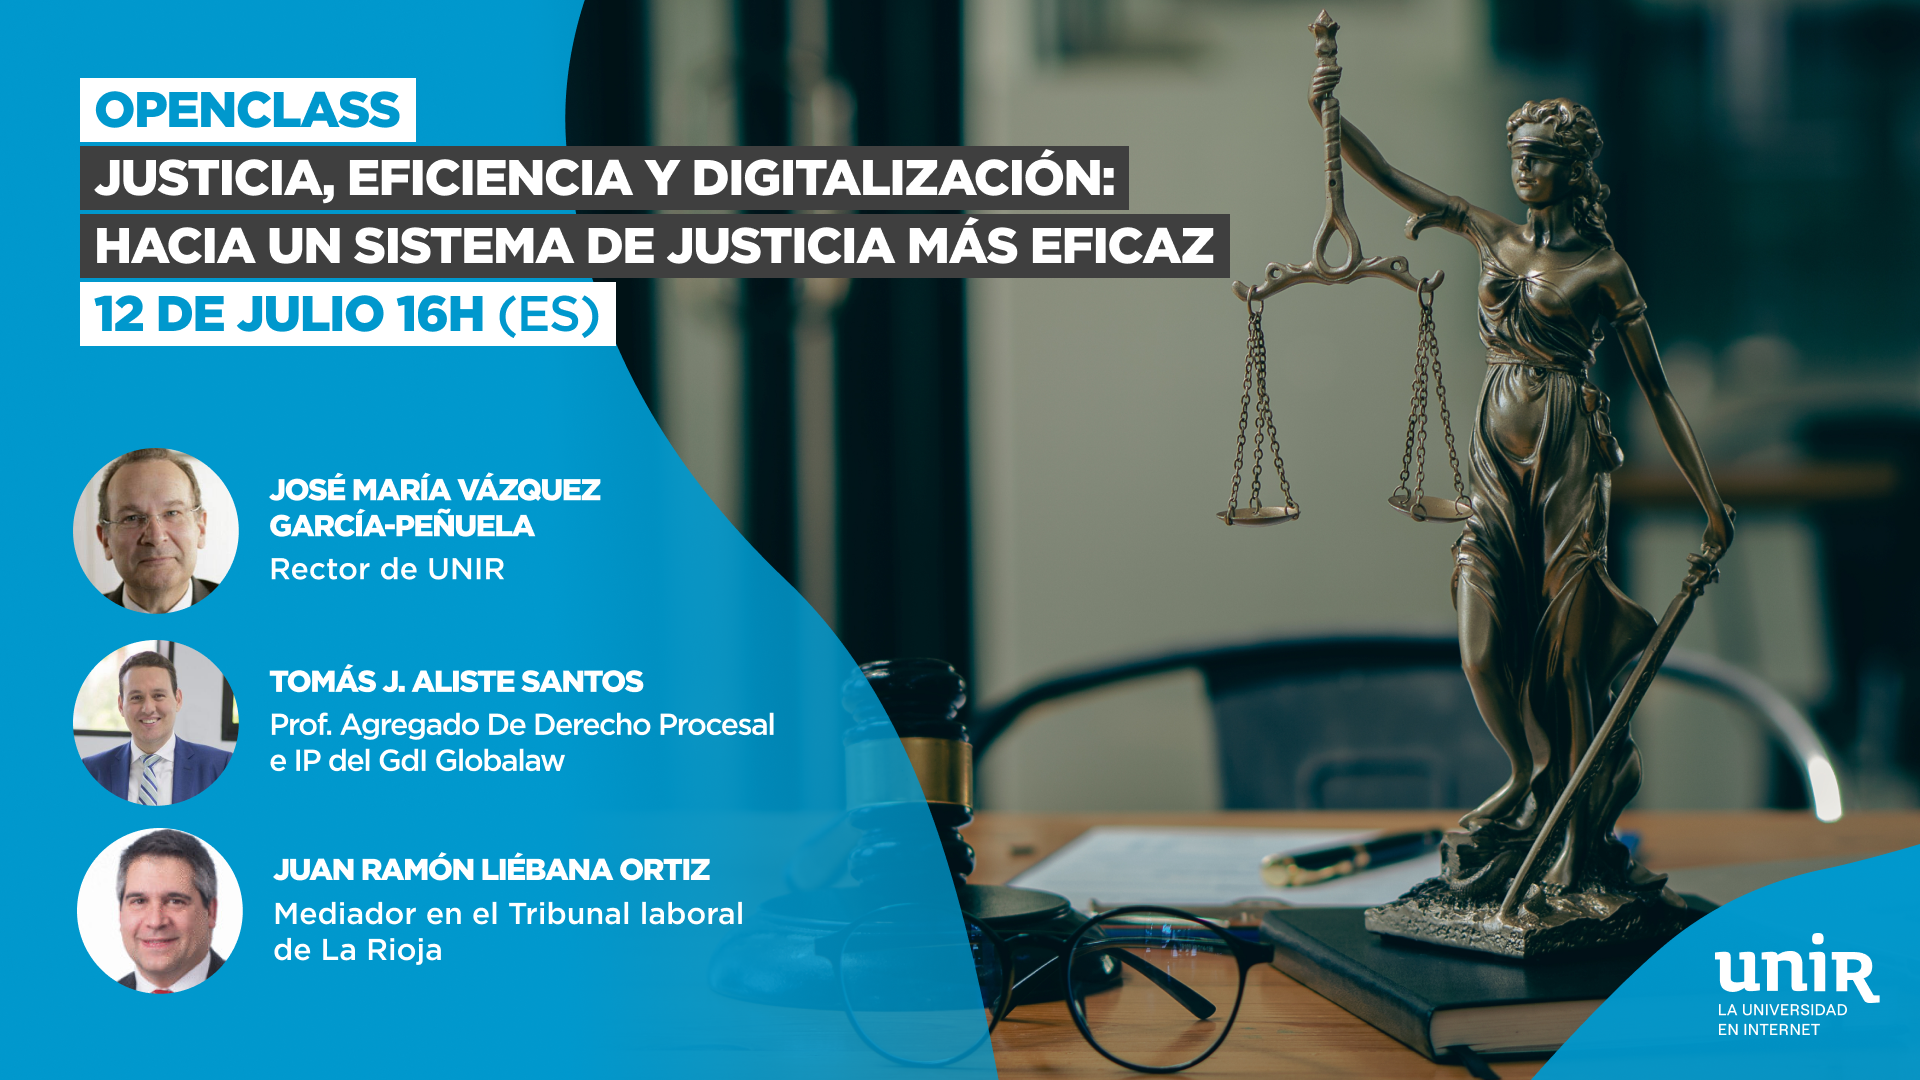 Justicia, eficiencia y digitalización: hacia un sistema de justicia más eficaz